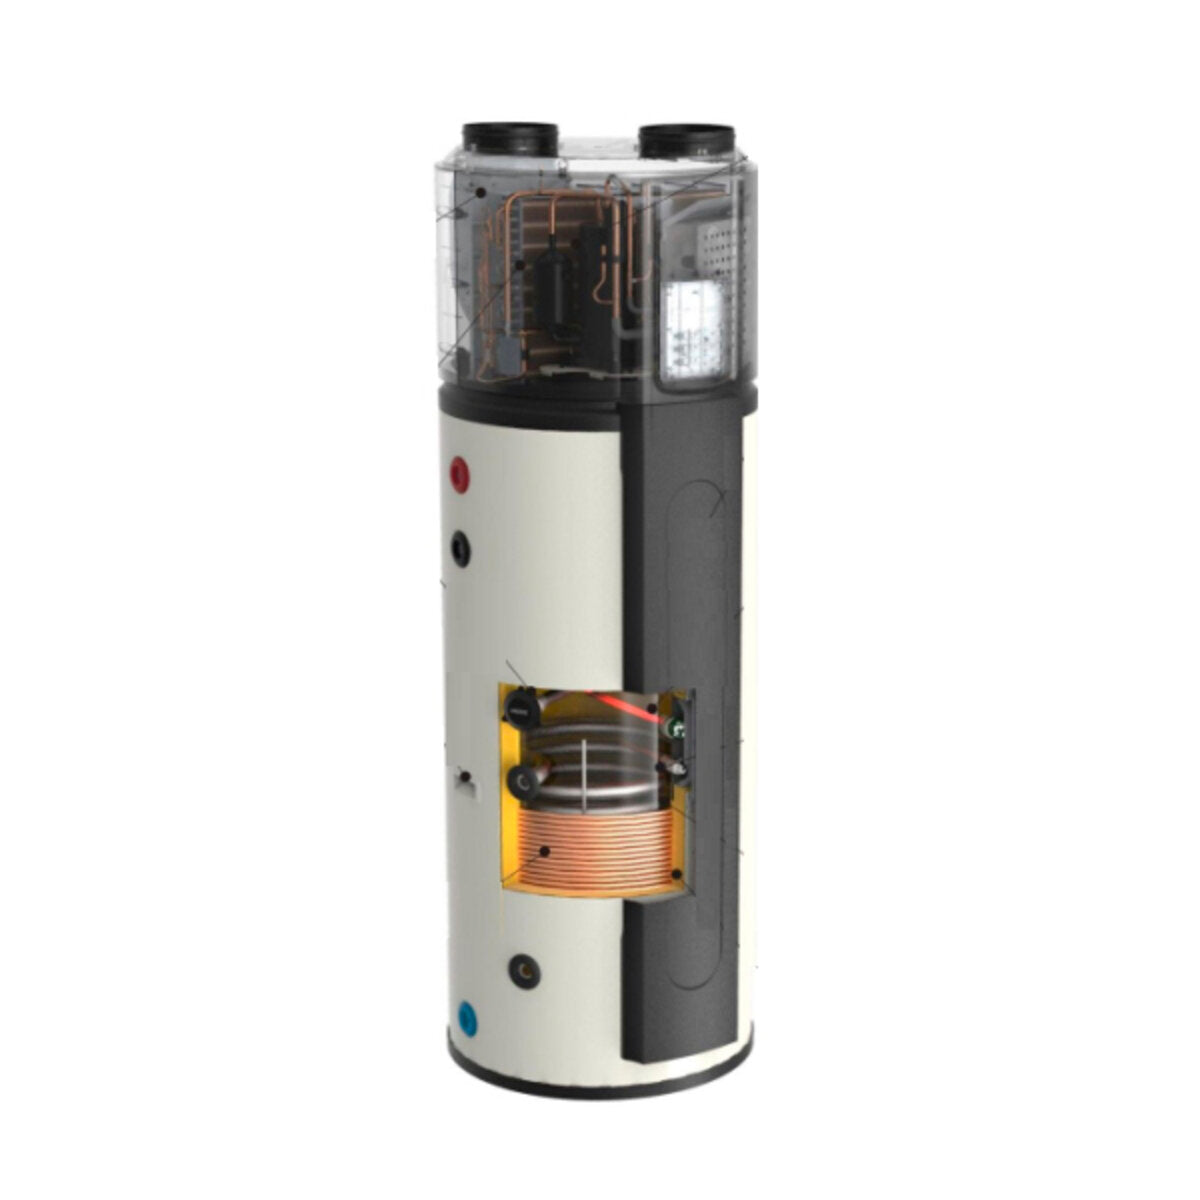 Clivet AQUA Plus SWAN-2 300 heat pump water heater